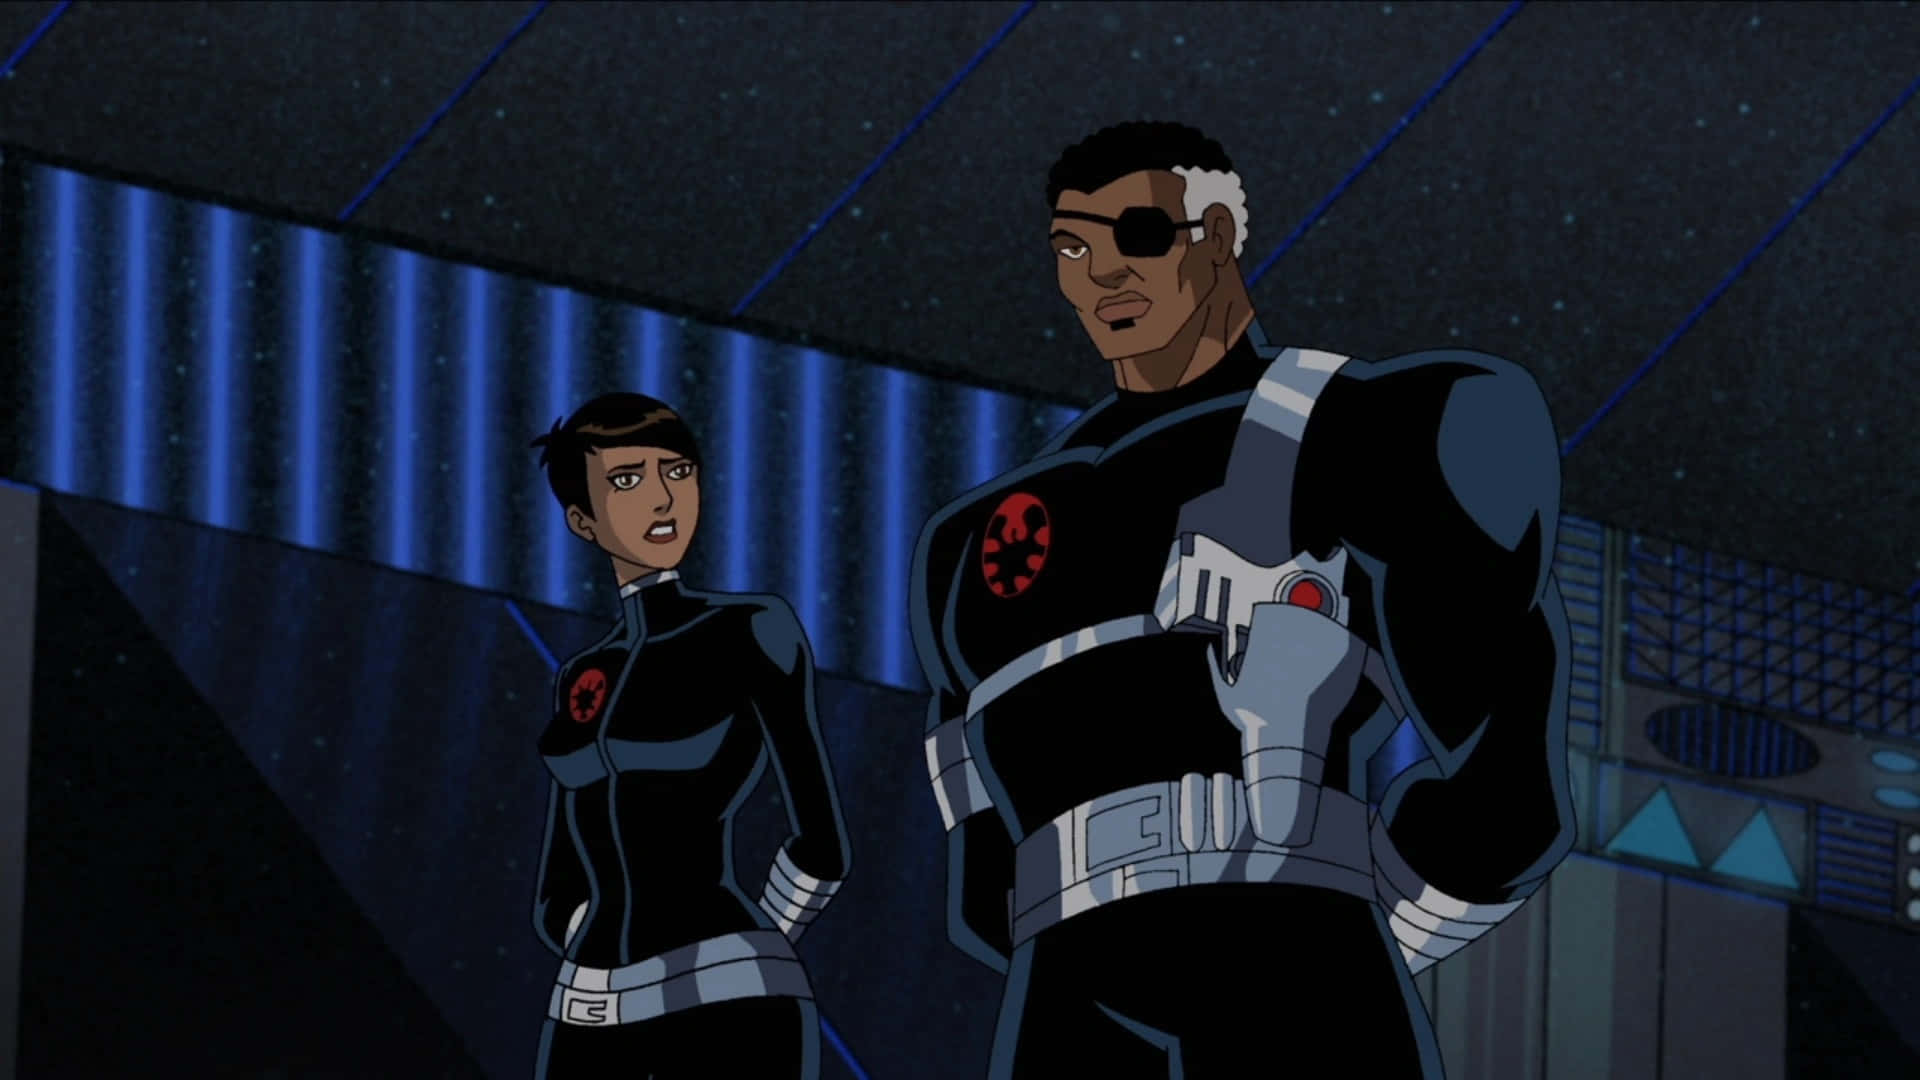 Personajede Marvel Comics Maria Hill En Su Uniforme Militar. Fondo de pantalla